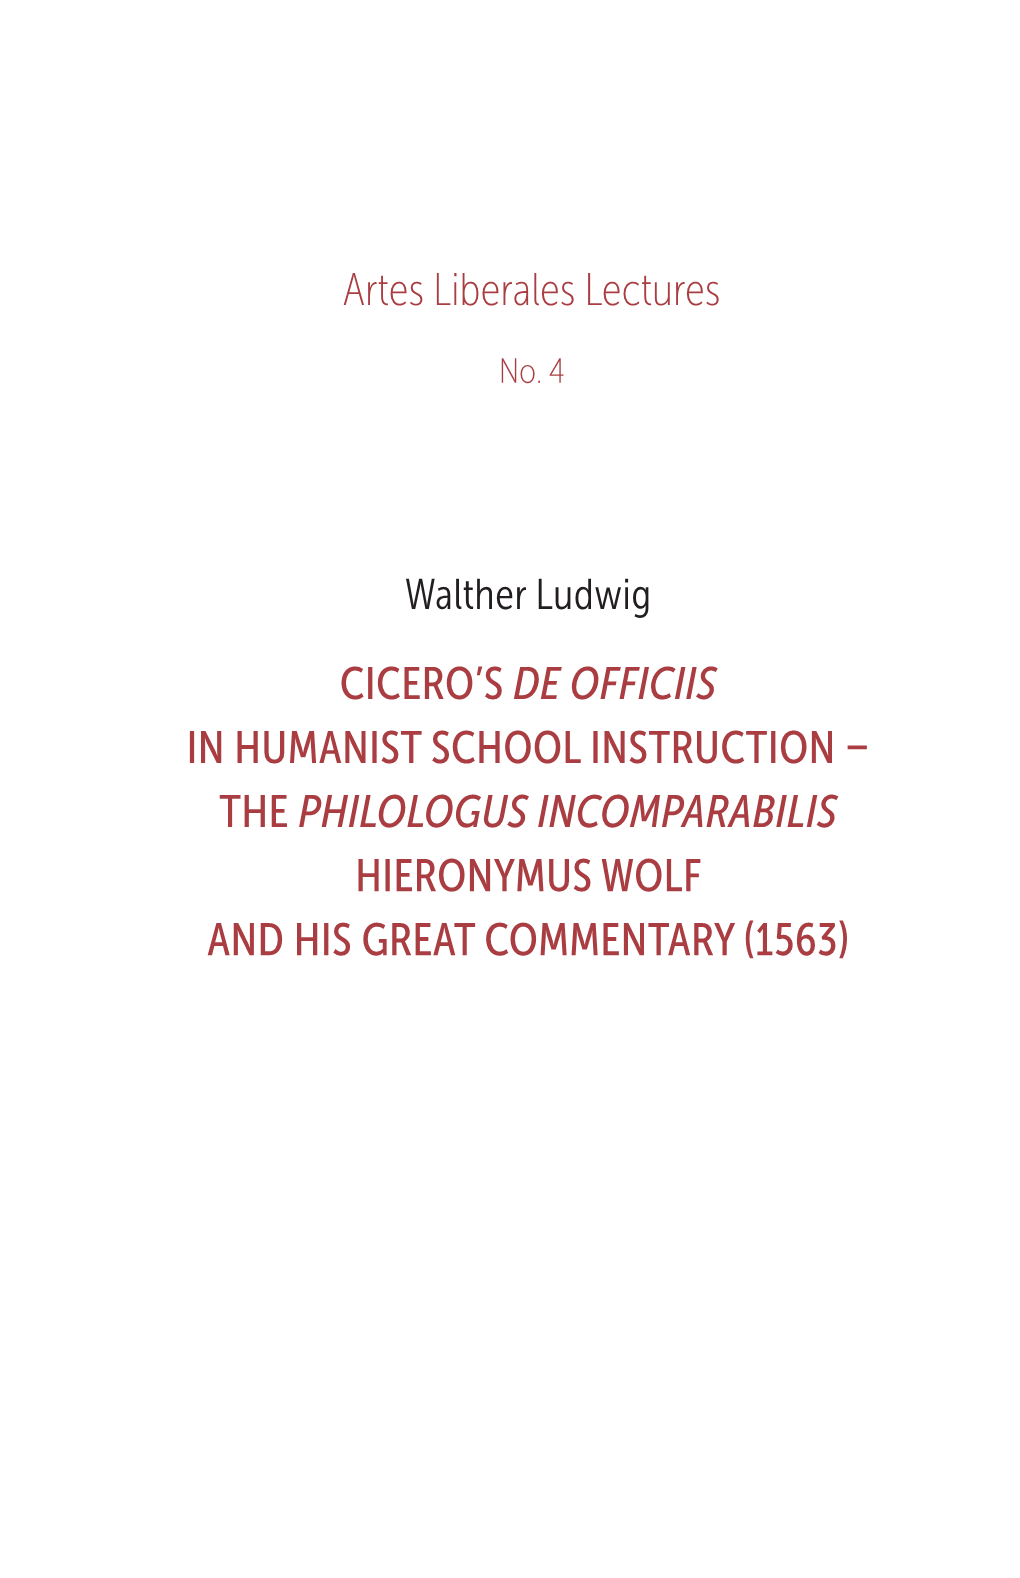 Artes Liberales Lectures No. 4